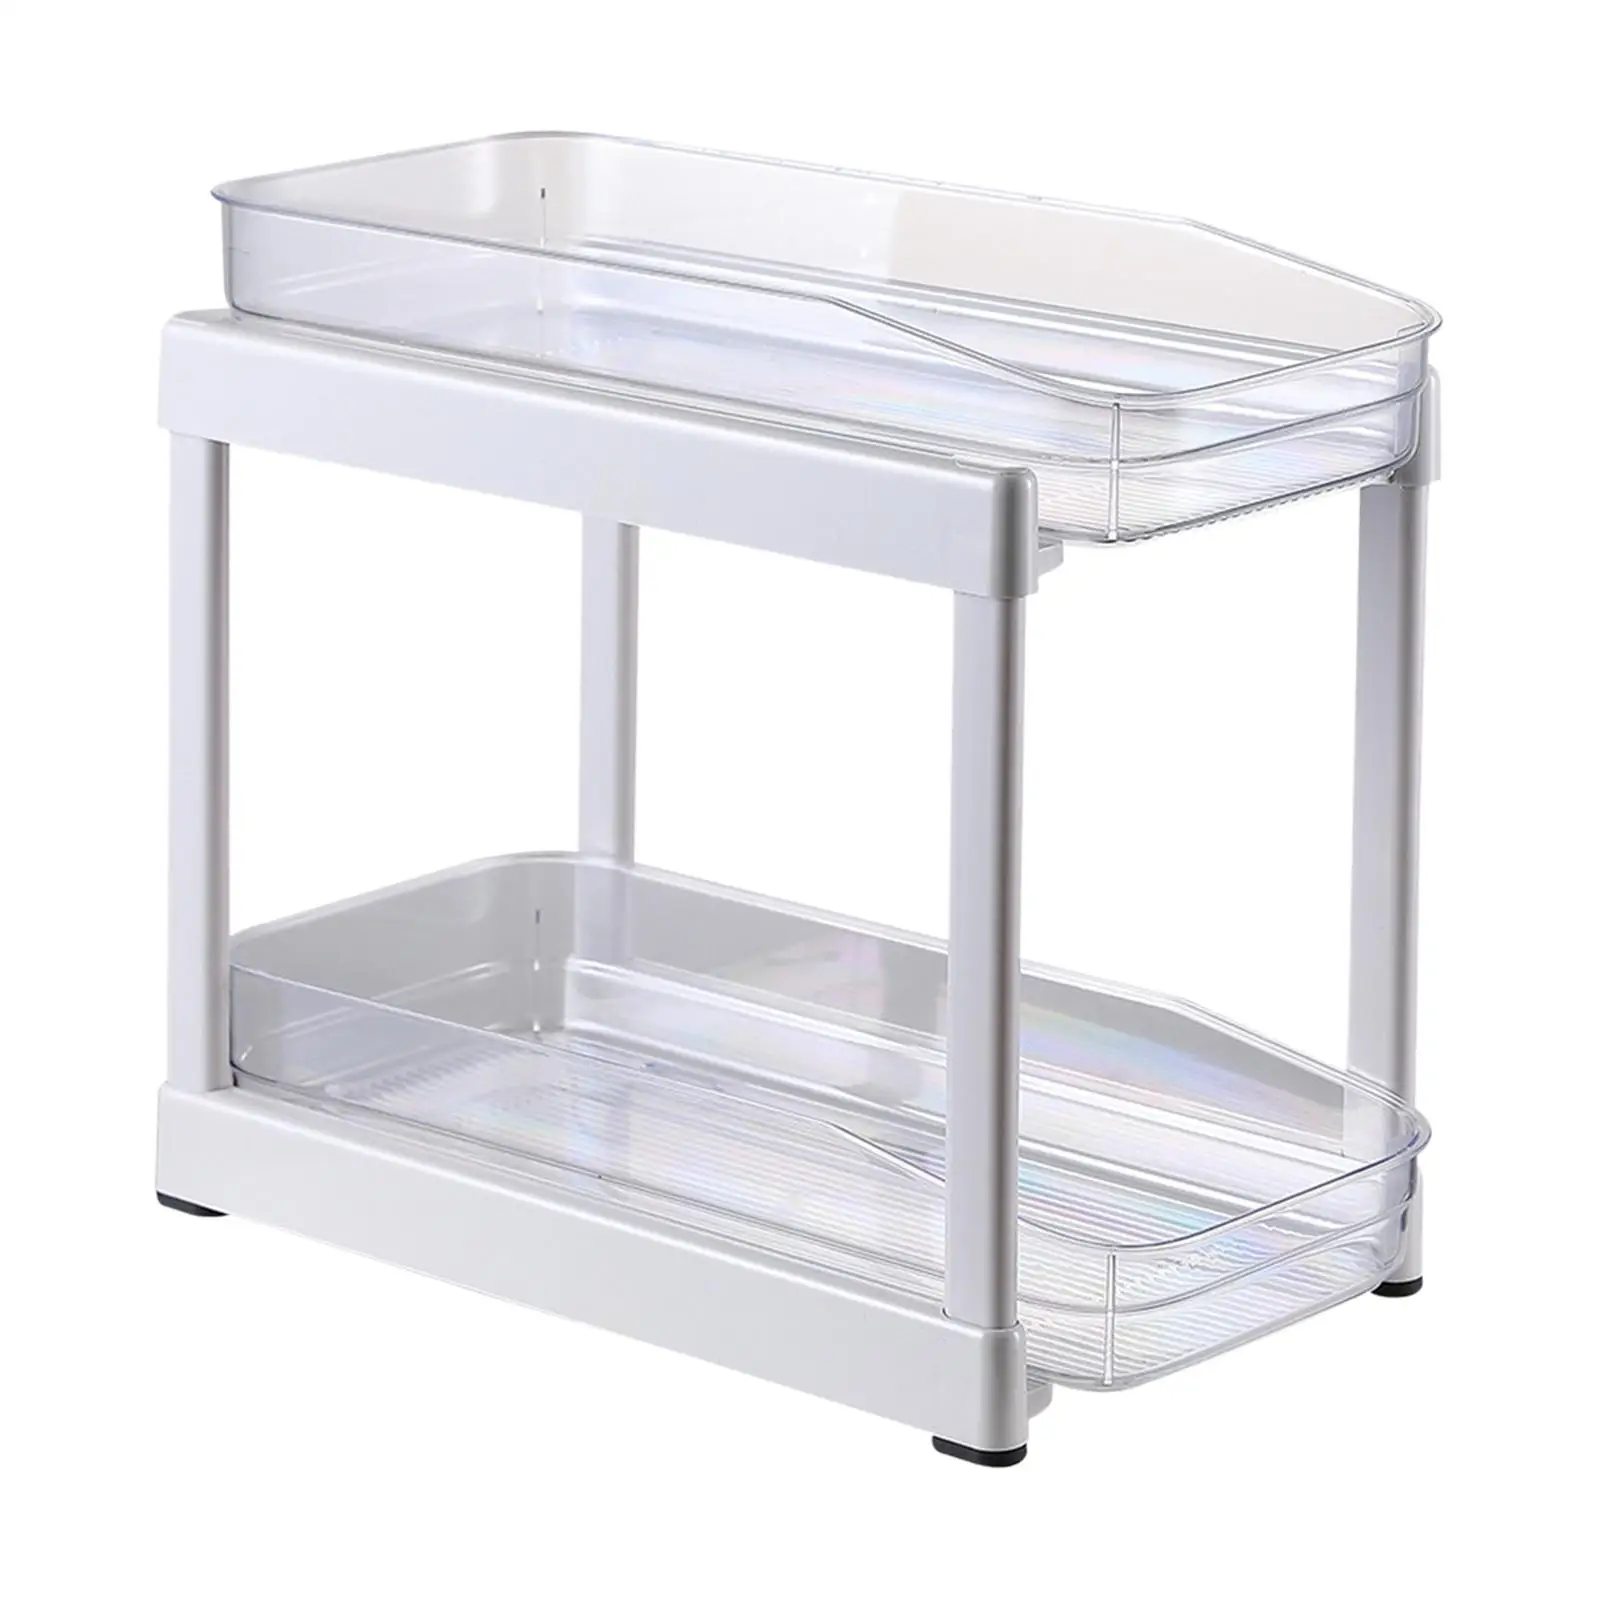 Clear Organizer Practical for Cabinet Convenient Accessories Sliding Tray Drawer Organizer 2 Tier Versatile under Sink Shelf